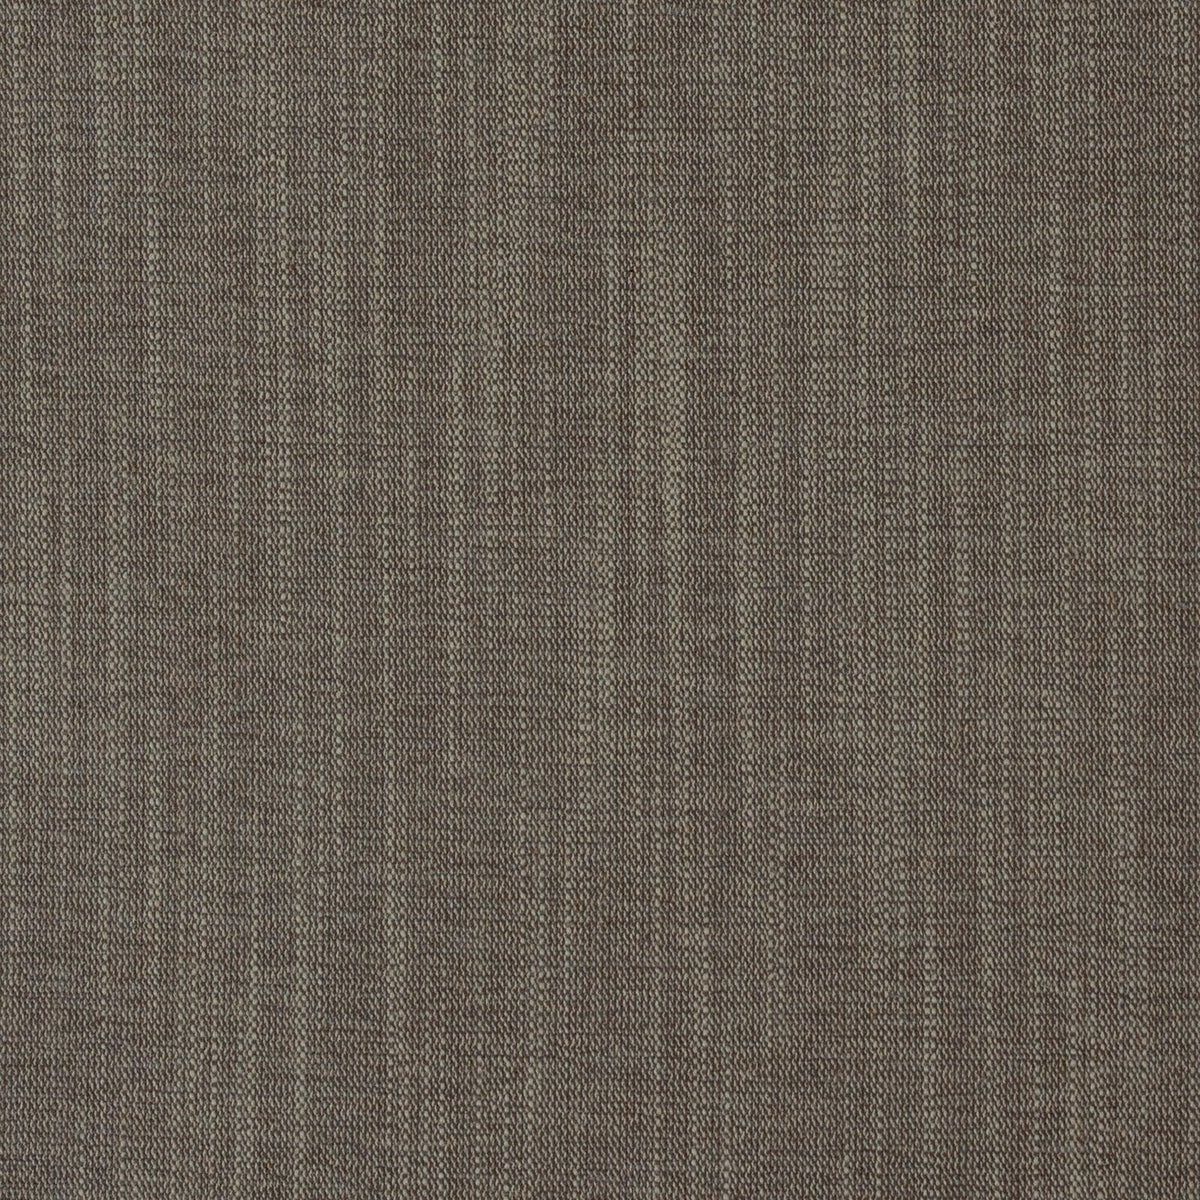 Caston-Stone - Atlanta Fabrics